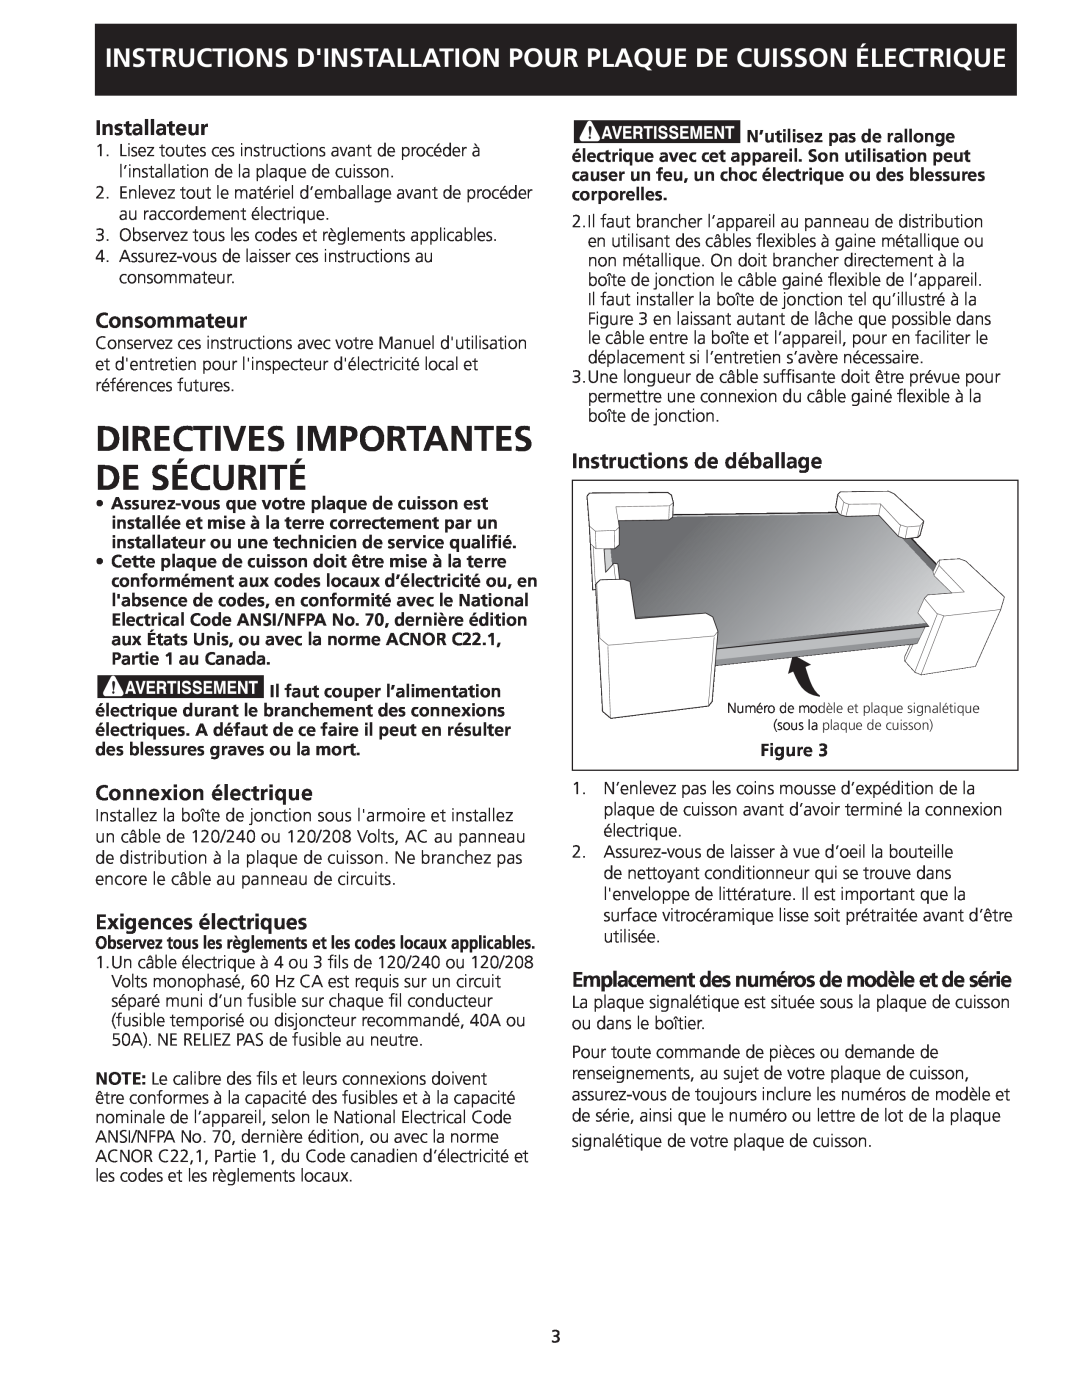 Frigidaire 318205408(0901) Directives Importantes De Sécurité, Installateur, Consommateur, Connexion électrique 